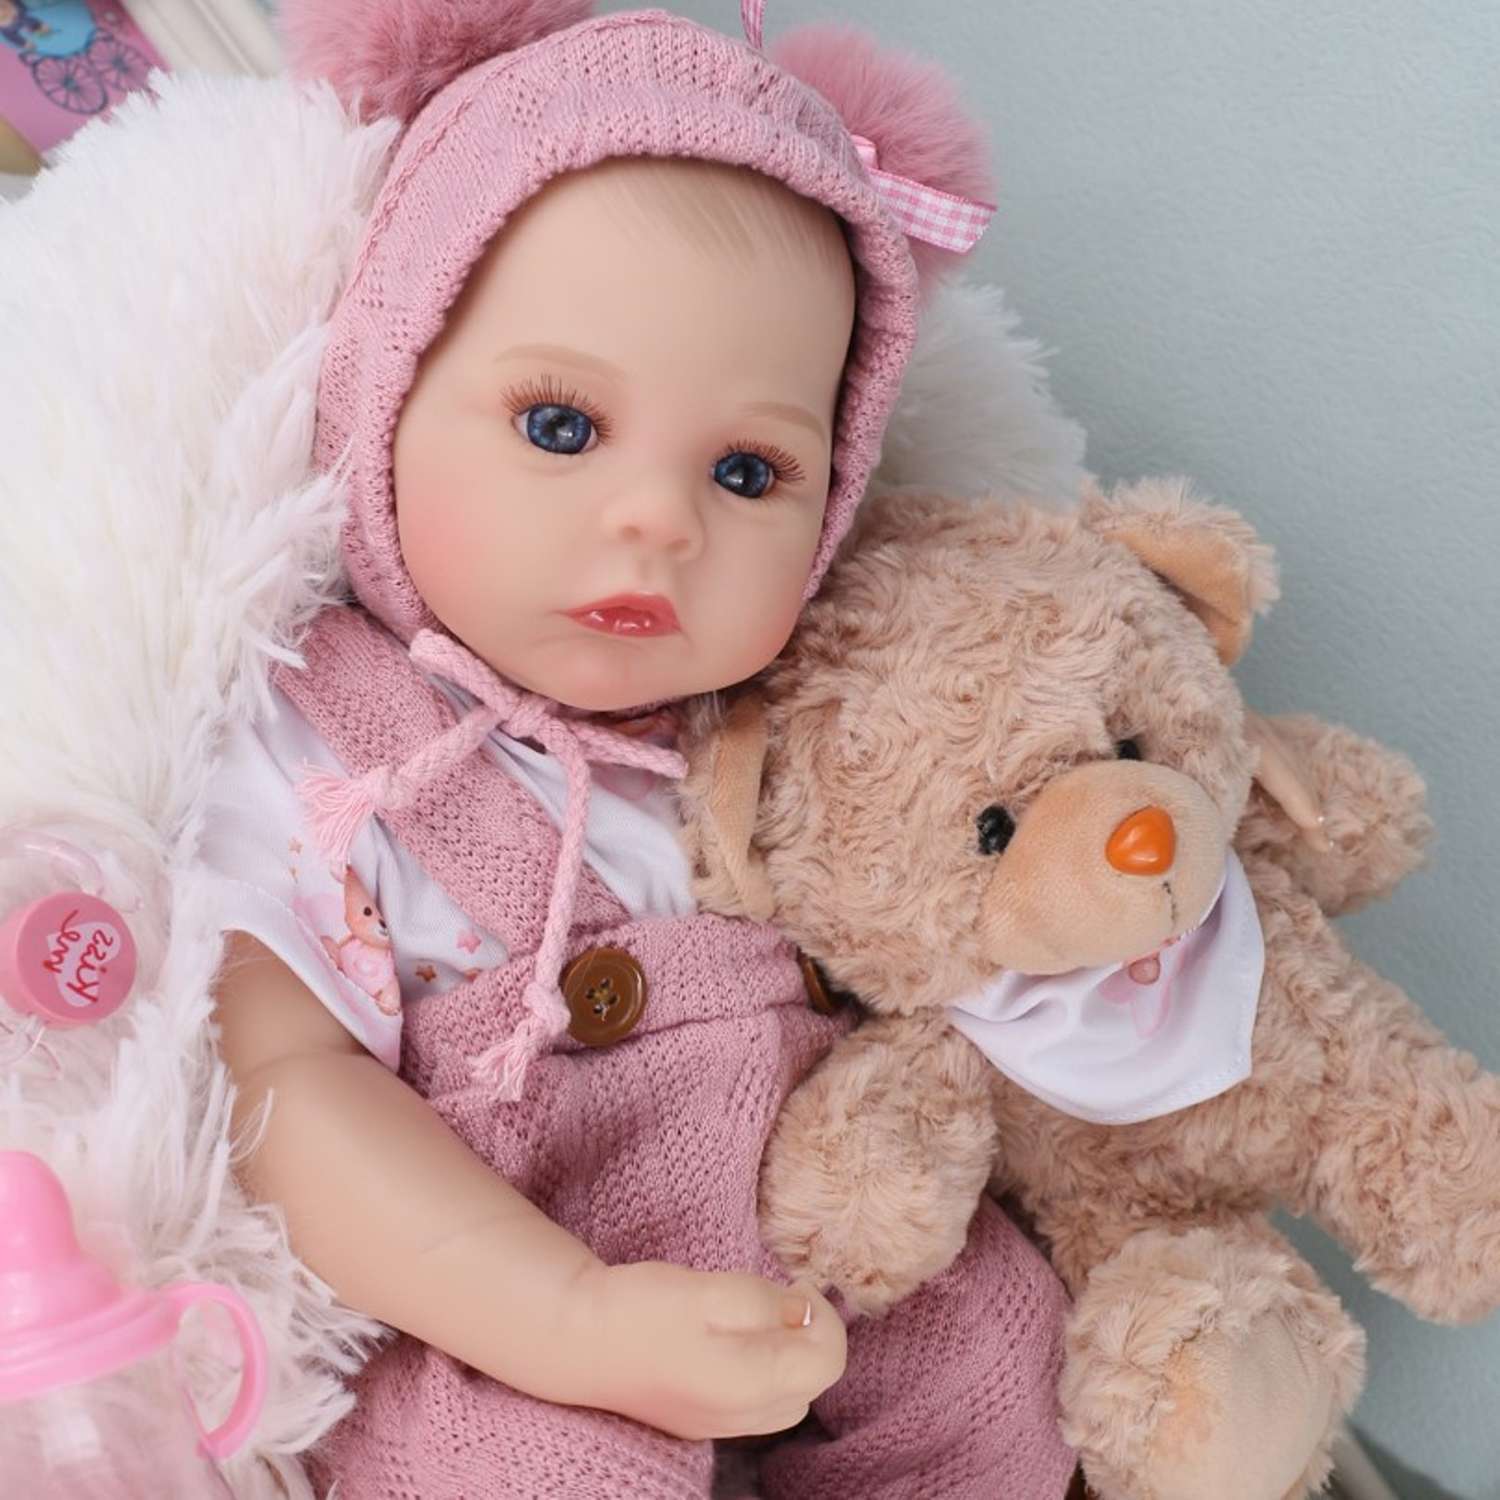 Кукла Реборн QA BABY Анна пупс с соской набор игрушки для девочки 45 см 42003 - фото 6